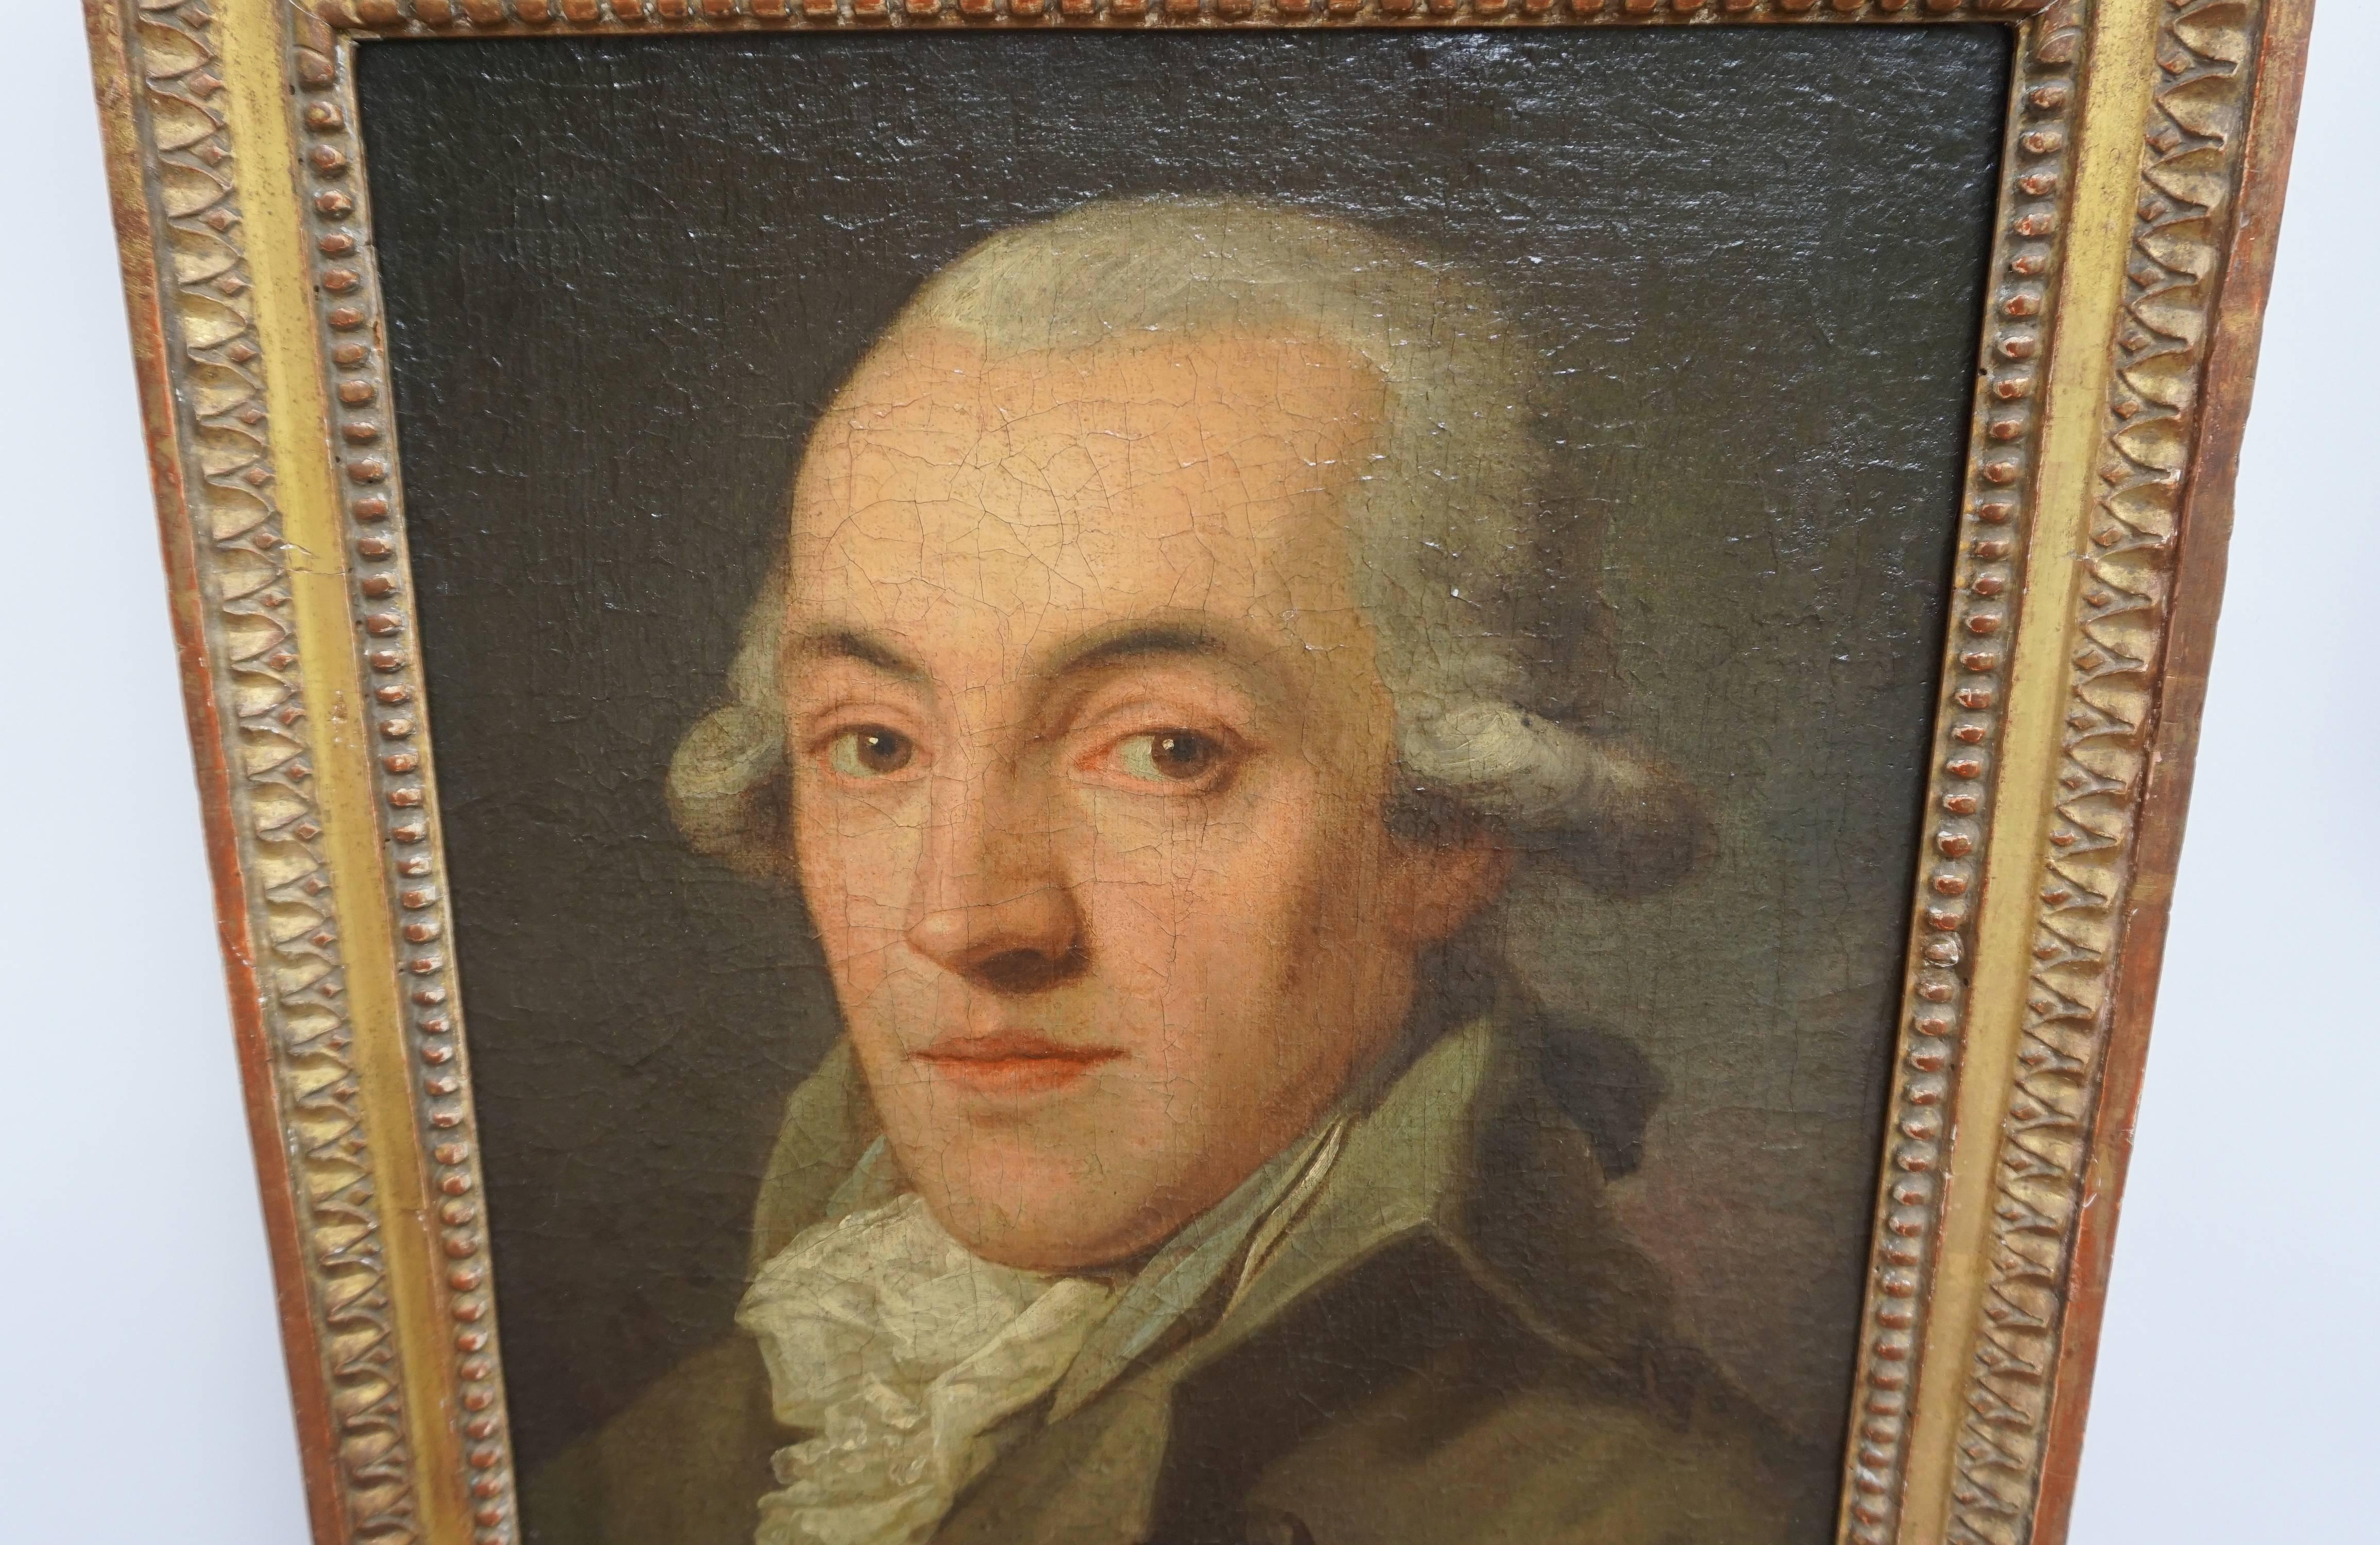 Une peinture à l'huile sur toile de belle qualité, datant de 1780, représentant un gentleman en perruque poudrée, manteau, gilet et chemise à jabot, dans un cadre d'époque en bois doré à motifs de perles et de languettes d'agneau. Timbre de